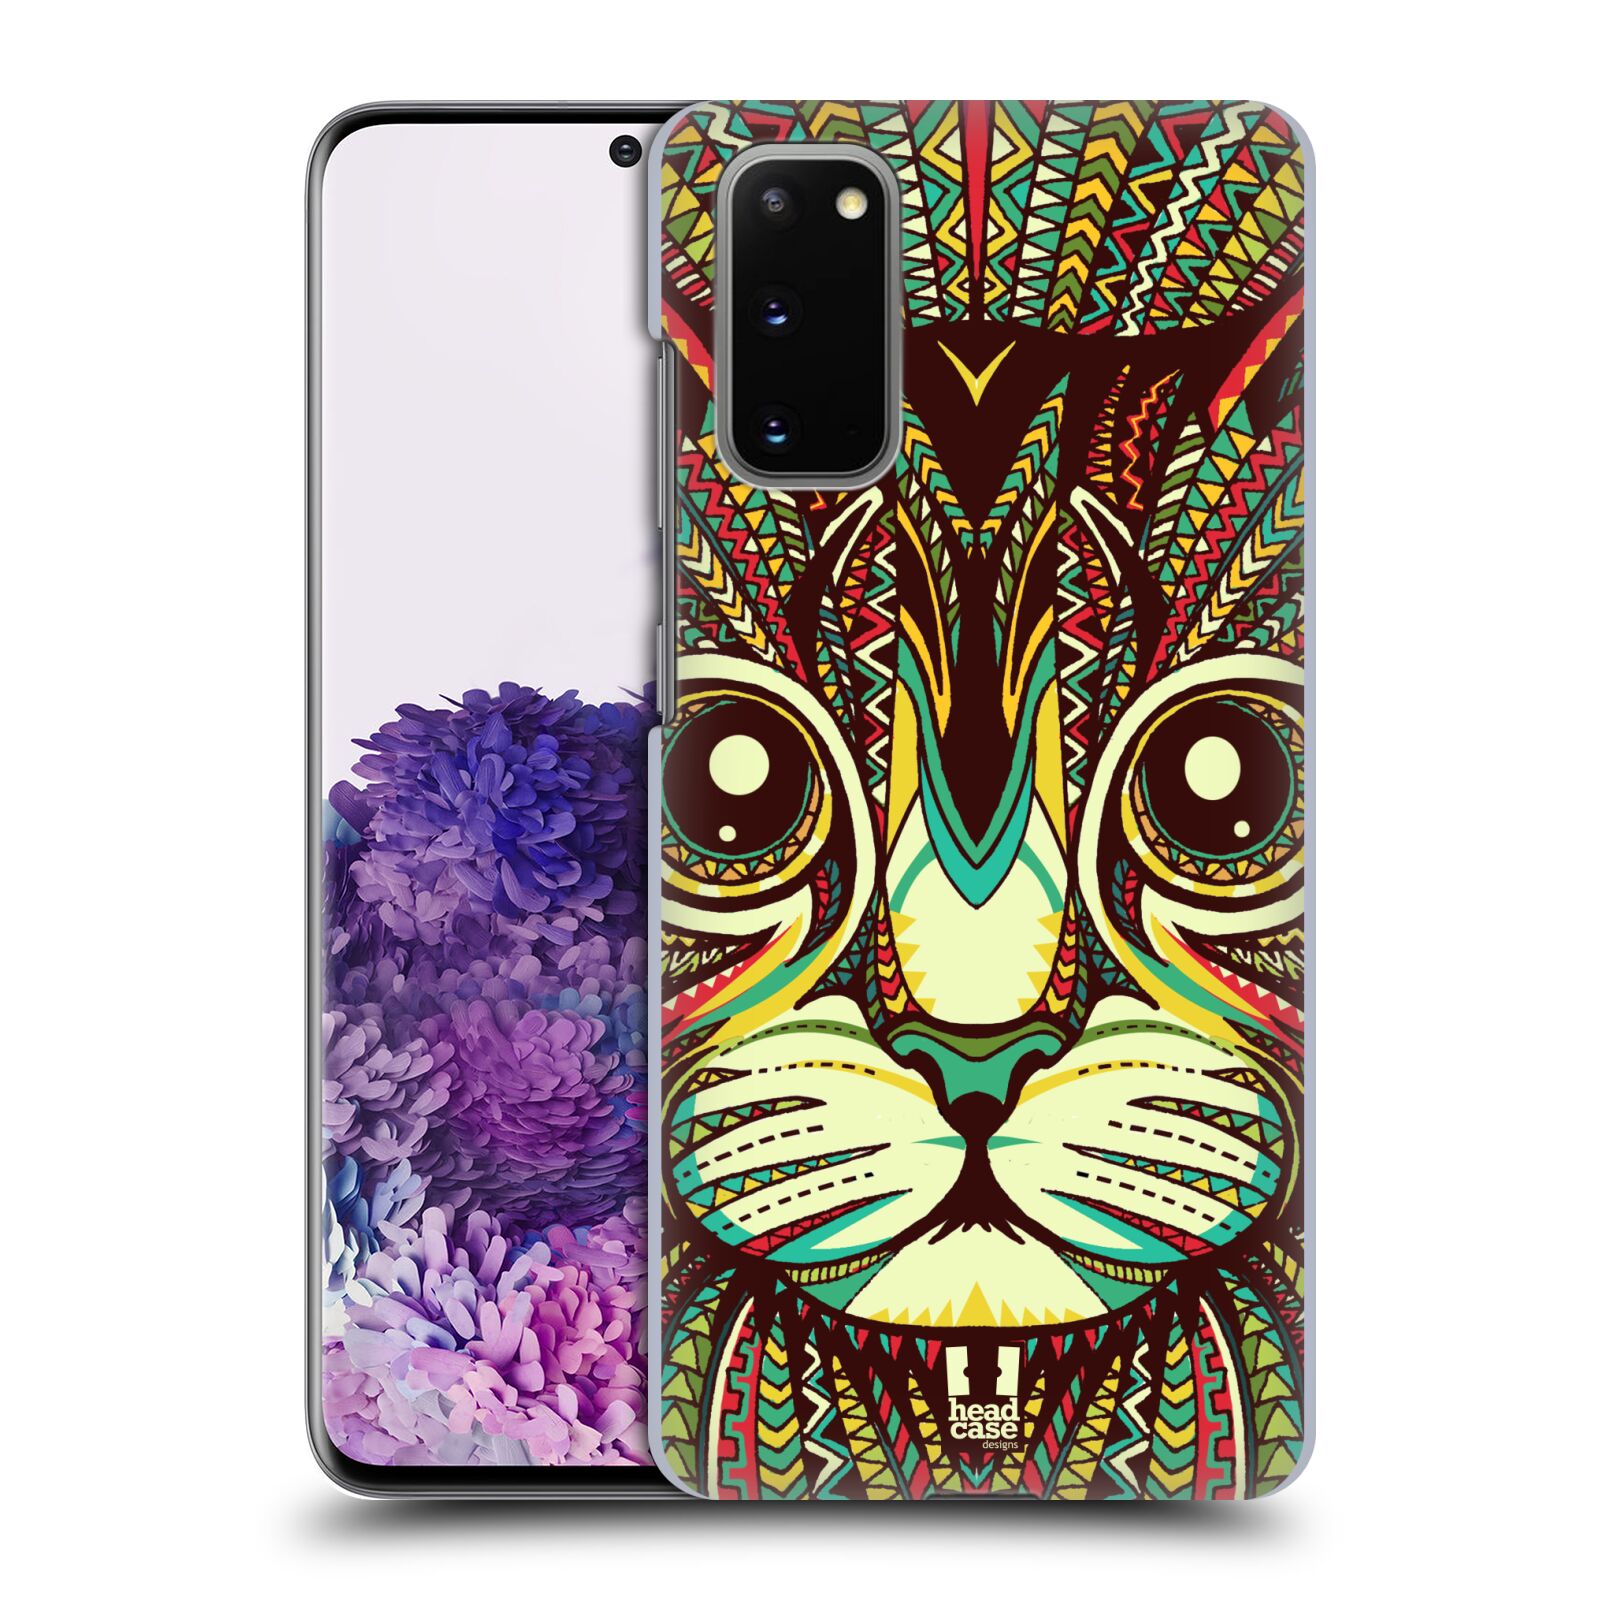 Pouzdro na mobil Samsung Galaxy S20 - HEAD CASE - vzor Aztécký motiv zvíře 2 kotě